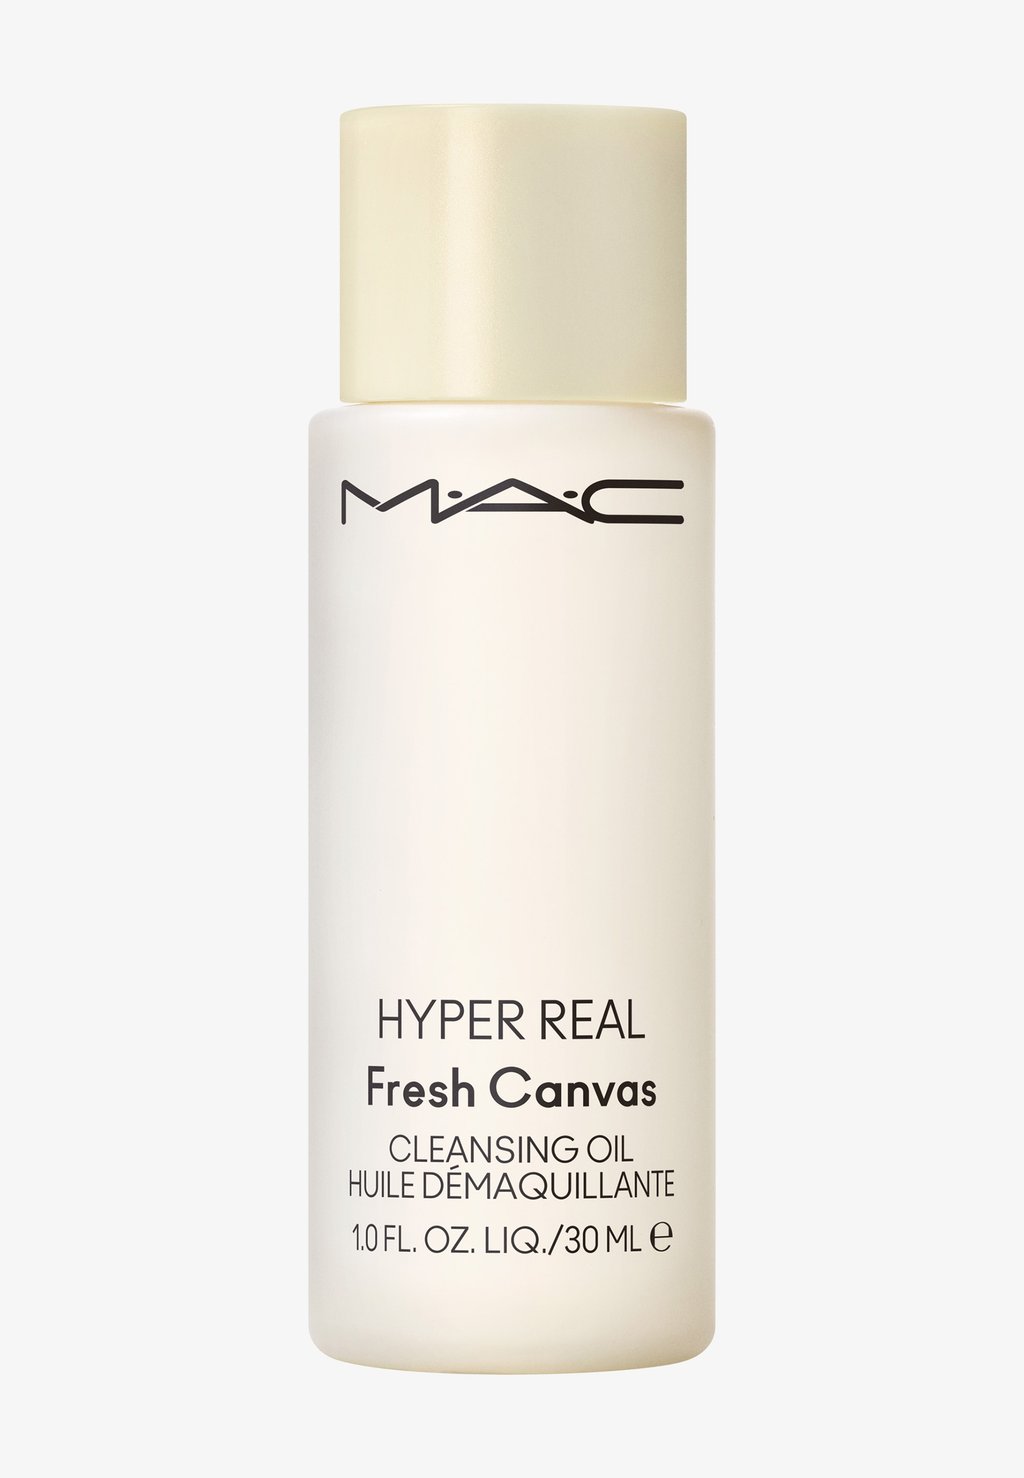 Очищающее средство Hyper Real Fresh Canvas Cleansing Oil MAC, цвет n/a mac hyper real fresh canvas cleansing oil travel size